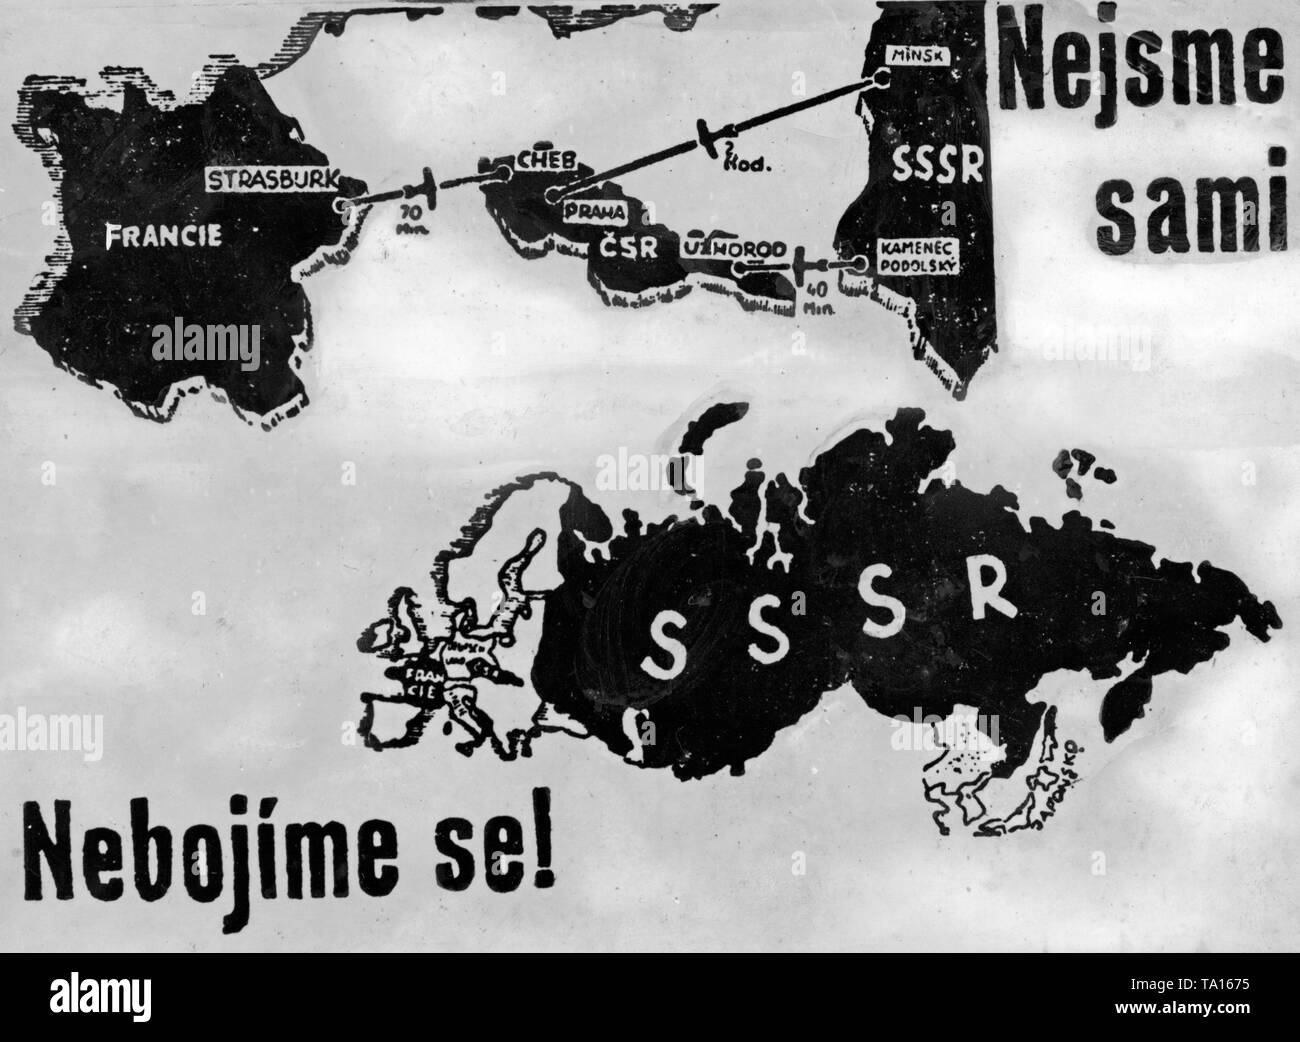 Poster cecoslovacco nel Sudetenland crisi. La mappa indica le distanze tra gli alleati della Cecoslovacchia. Sul poster: Nebojime se!( Inglese: non preoccuparti) e Nejsme sami (inglese: non siamo soli). Foto Stock